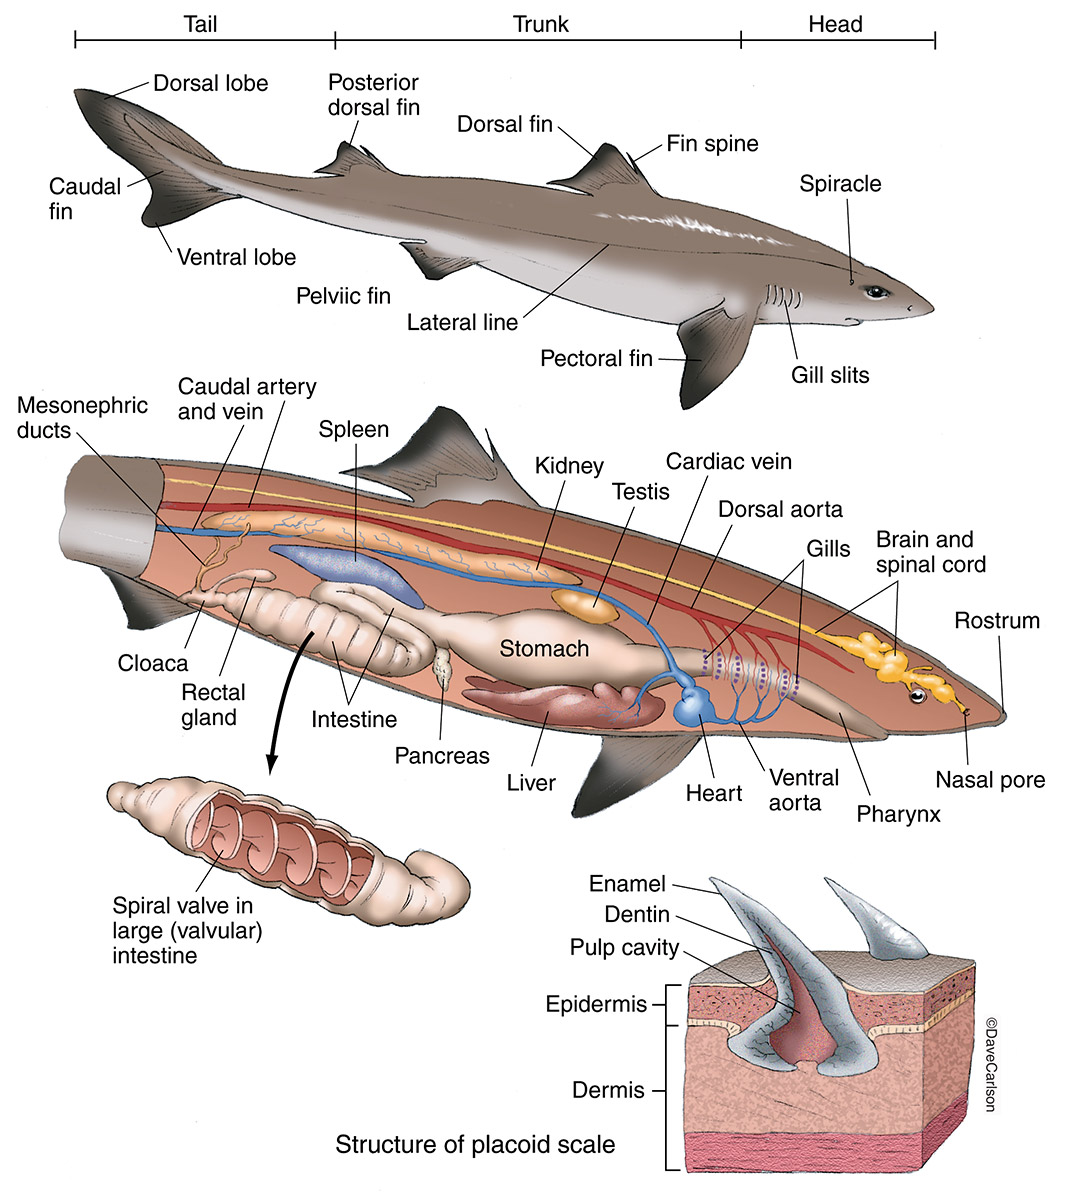 鲨鱼形态解析图片